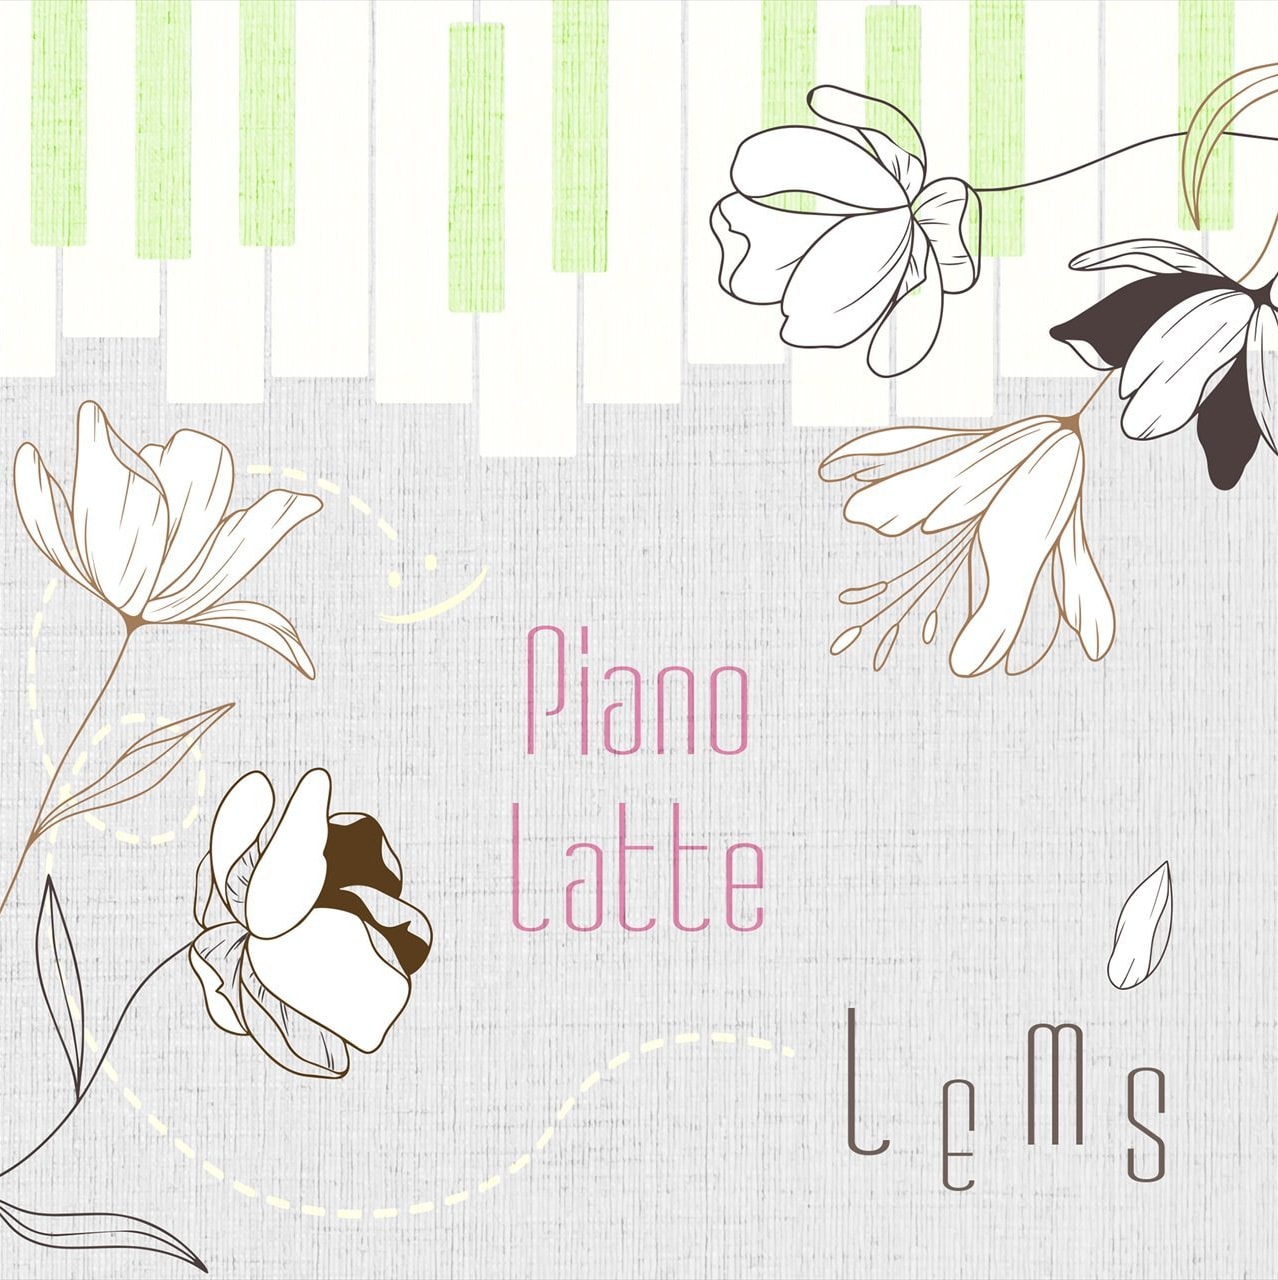 咲くカフェ LEMSによるInstrumental Jazzy HipHop「Piano Latte」。Japanese hiphop beatmaker。